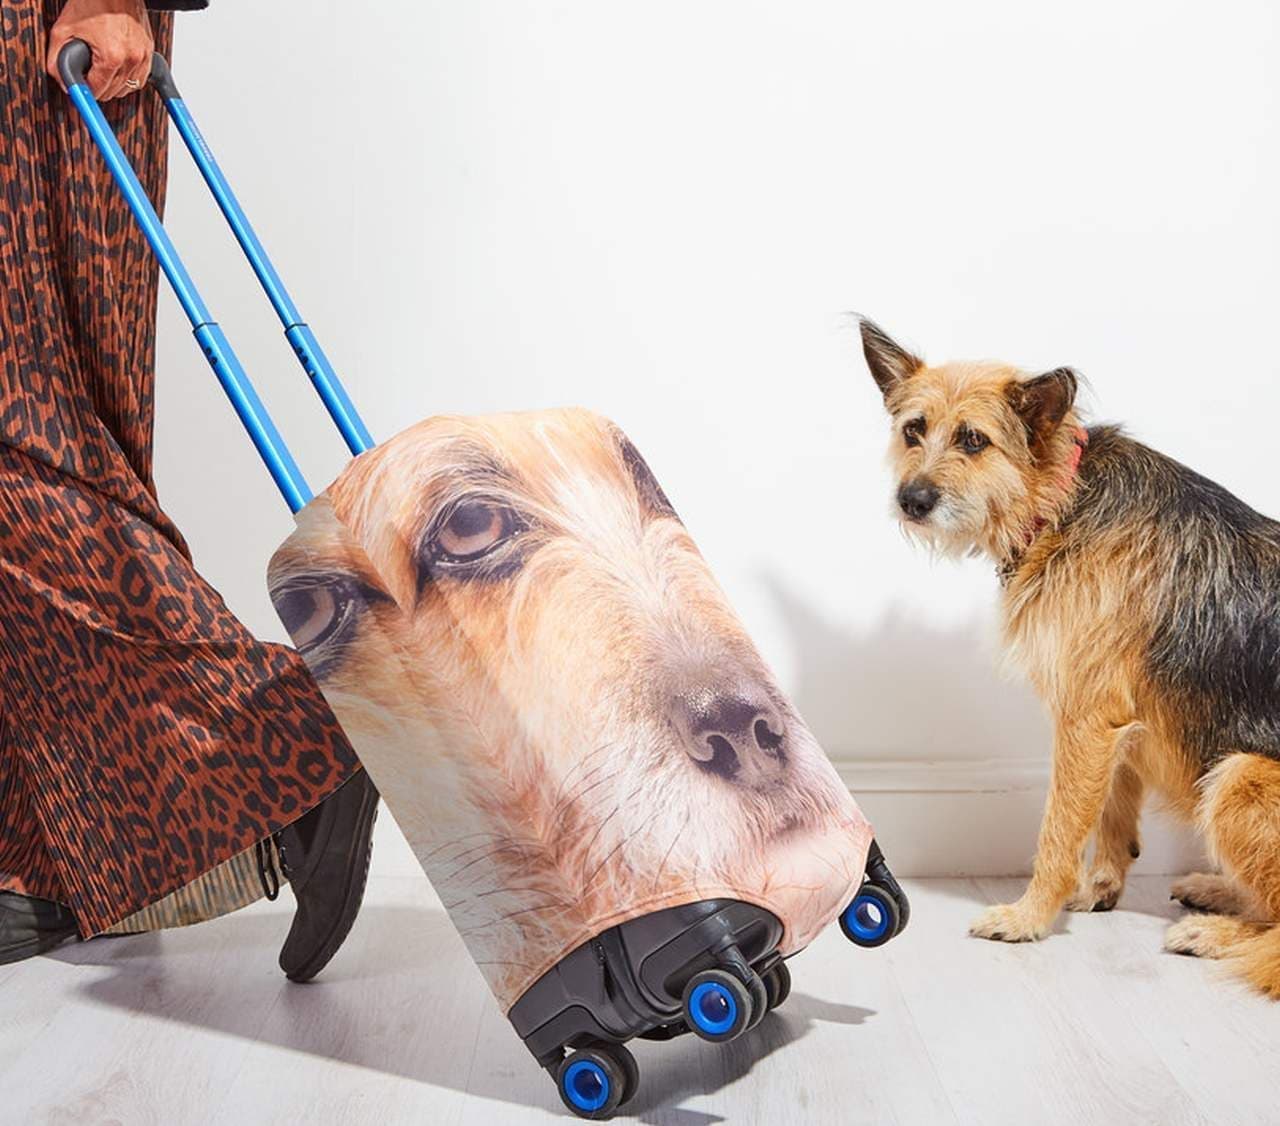 ペットの写真をスーツケースカバーにする「Pet Head Case」